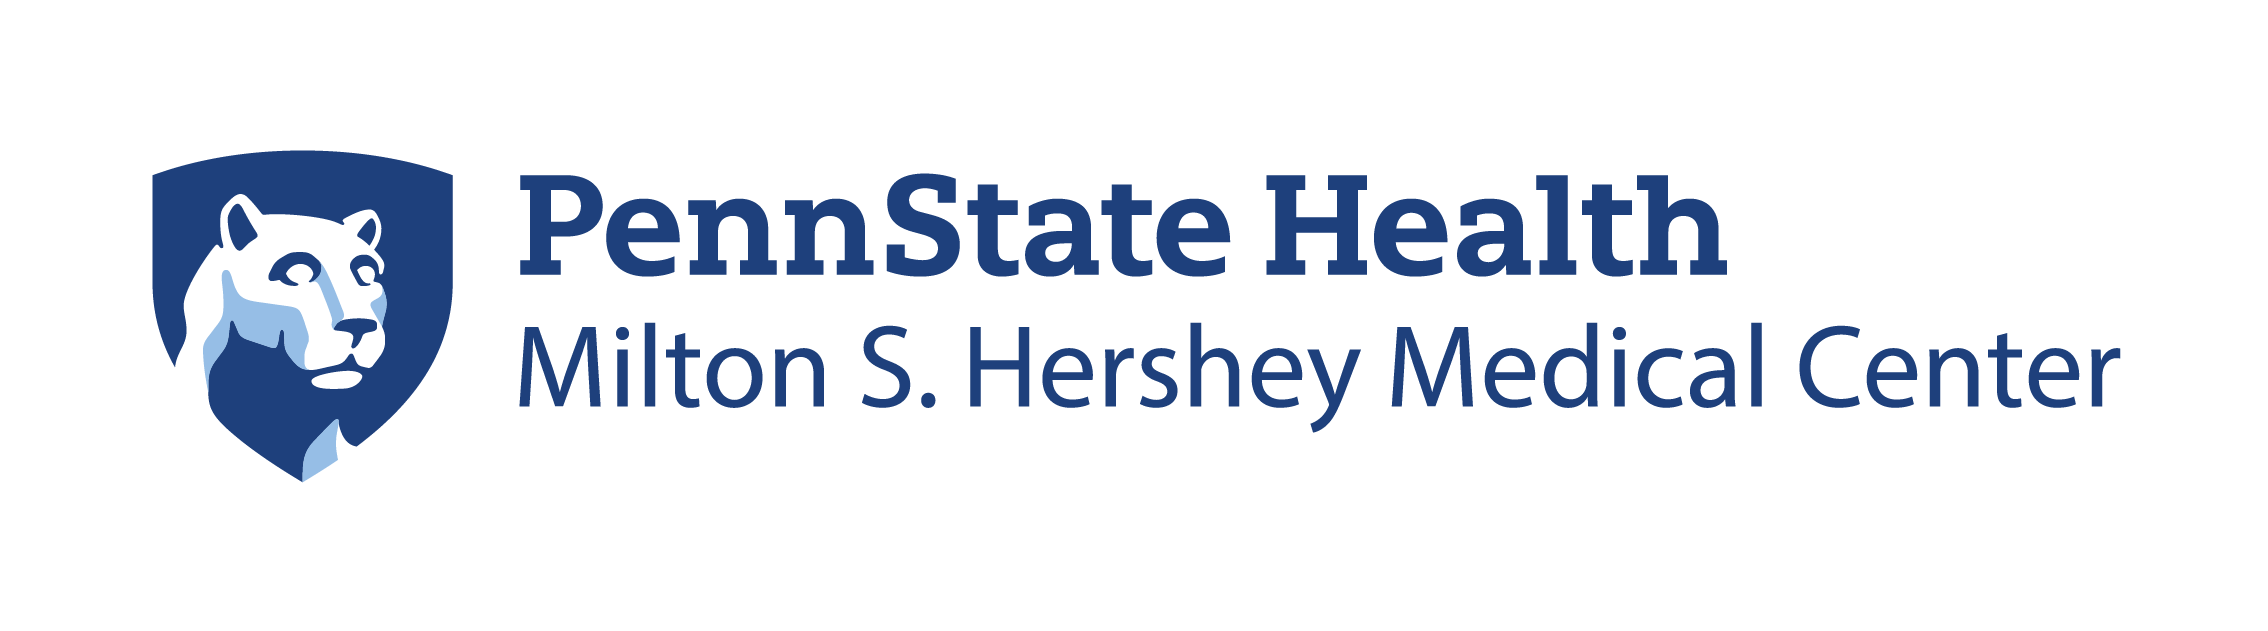 Penn State Health Milton Hershey Medical Center logo